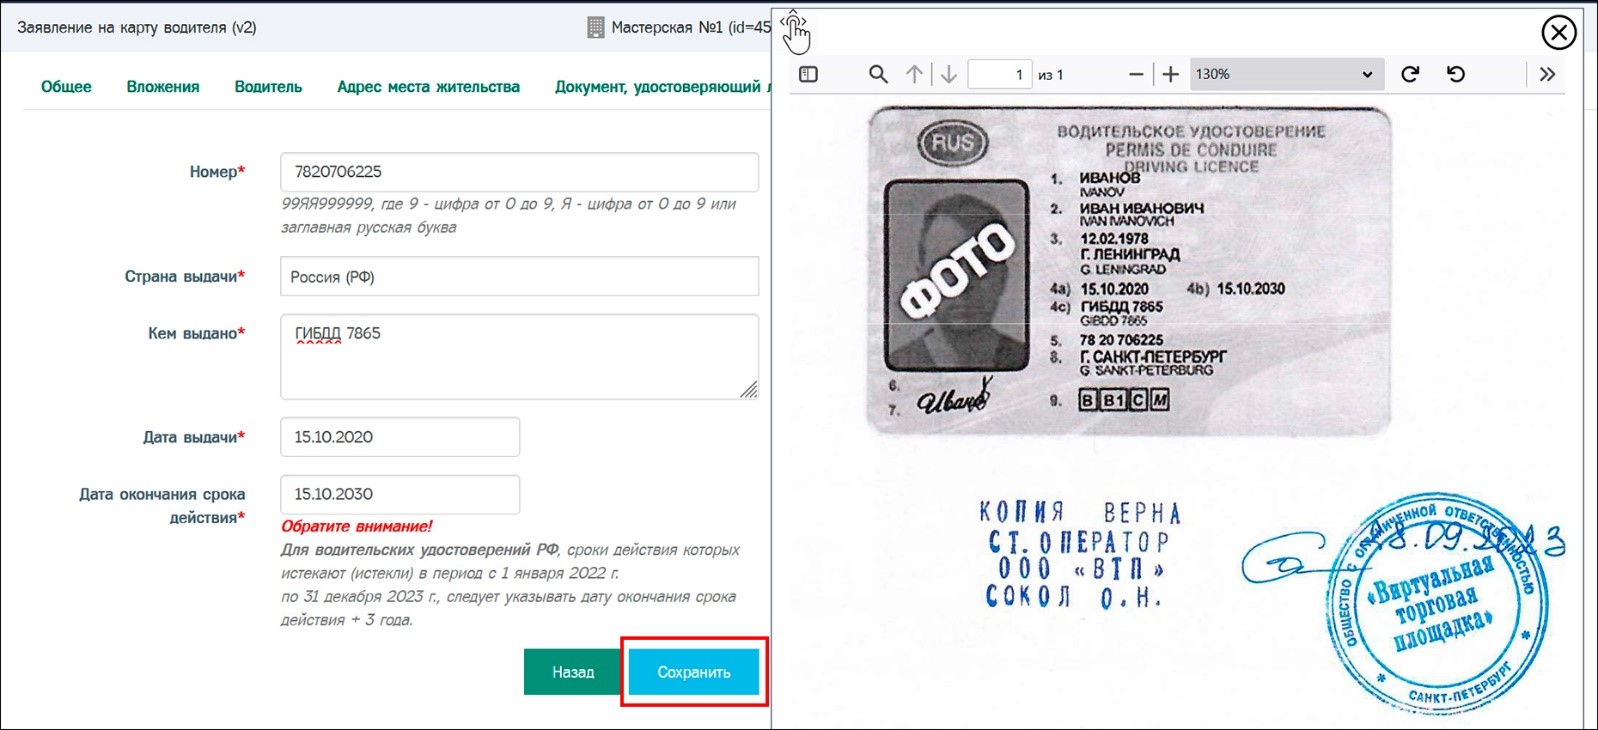 Пример заполненной вкладки «Водительское удостоверение» для гражданина РФ.